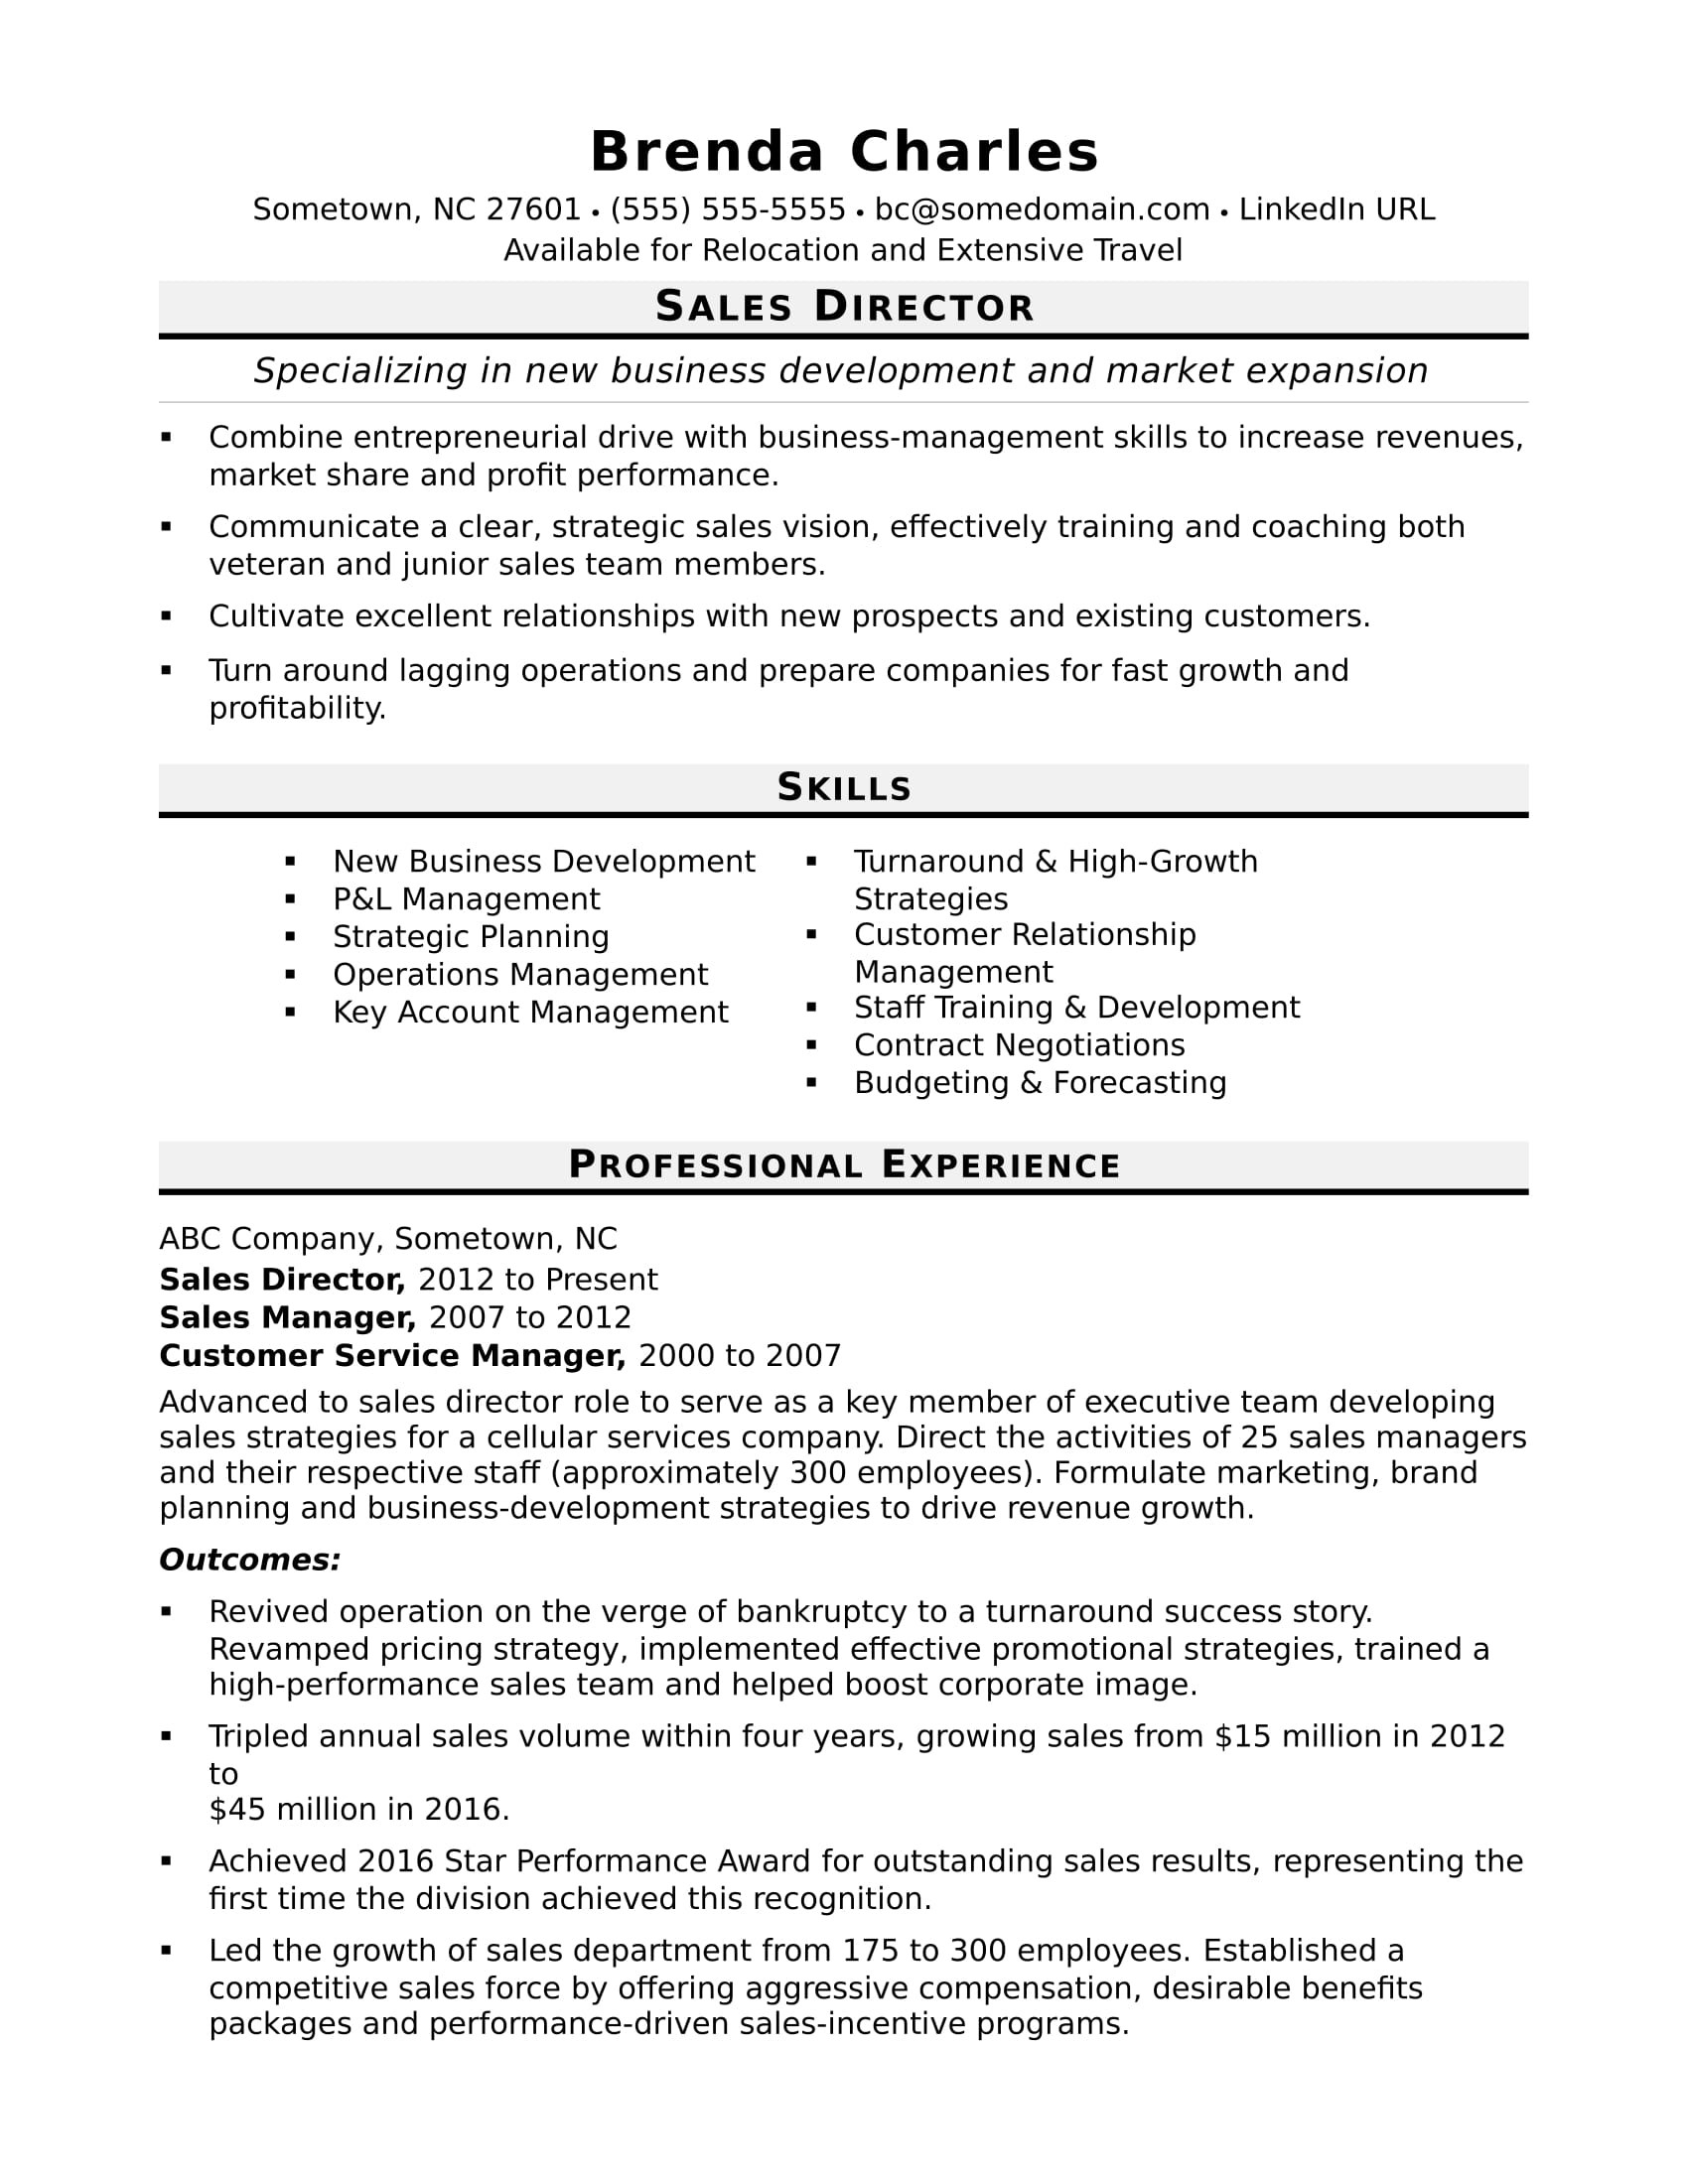 Inside Sales Direct Mail Sample Resume Sales Director Resume Sample Monster.com